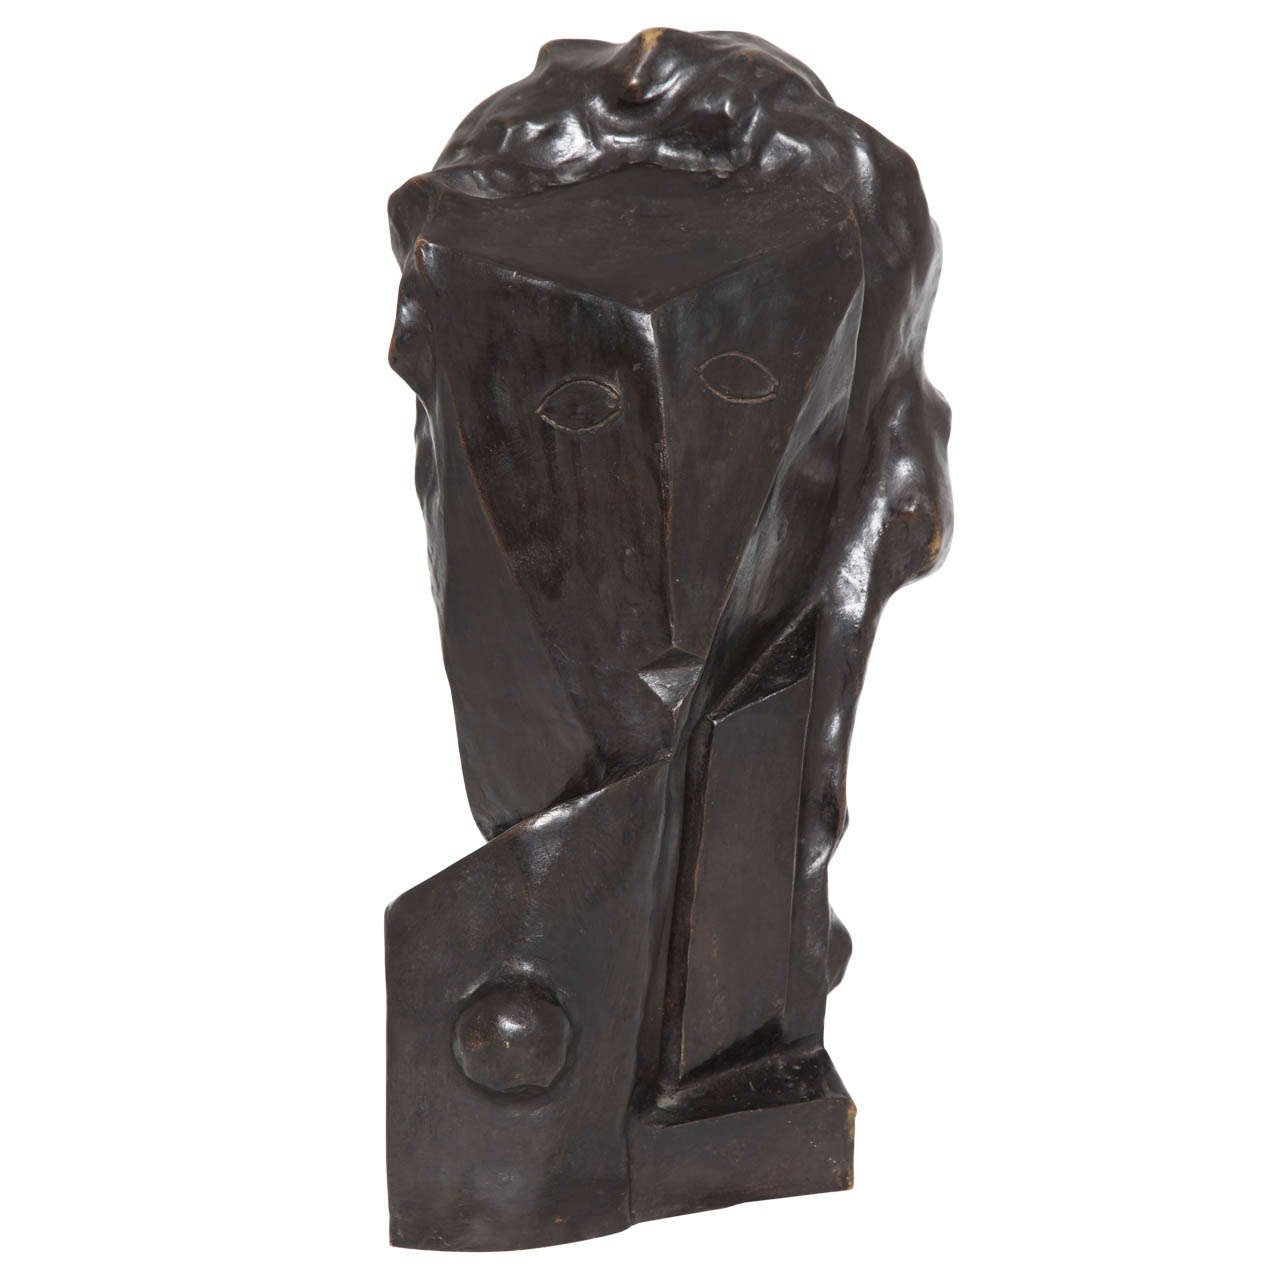 Art Deco Modernist Sculpture of a Head, Mark Macken, Belguim, 1936 For Sale